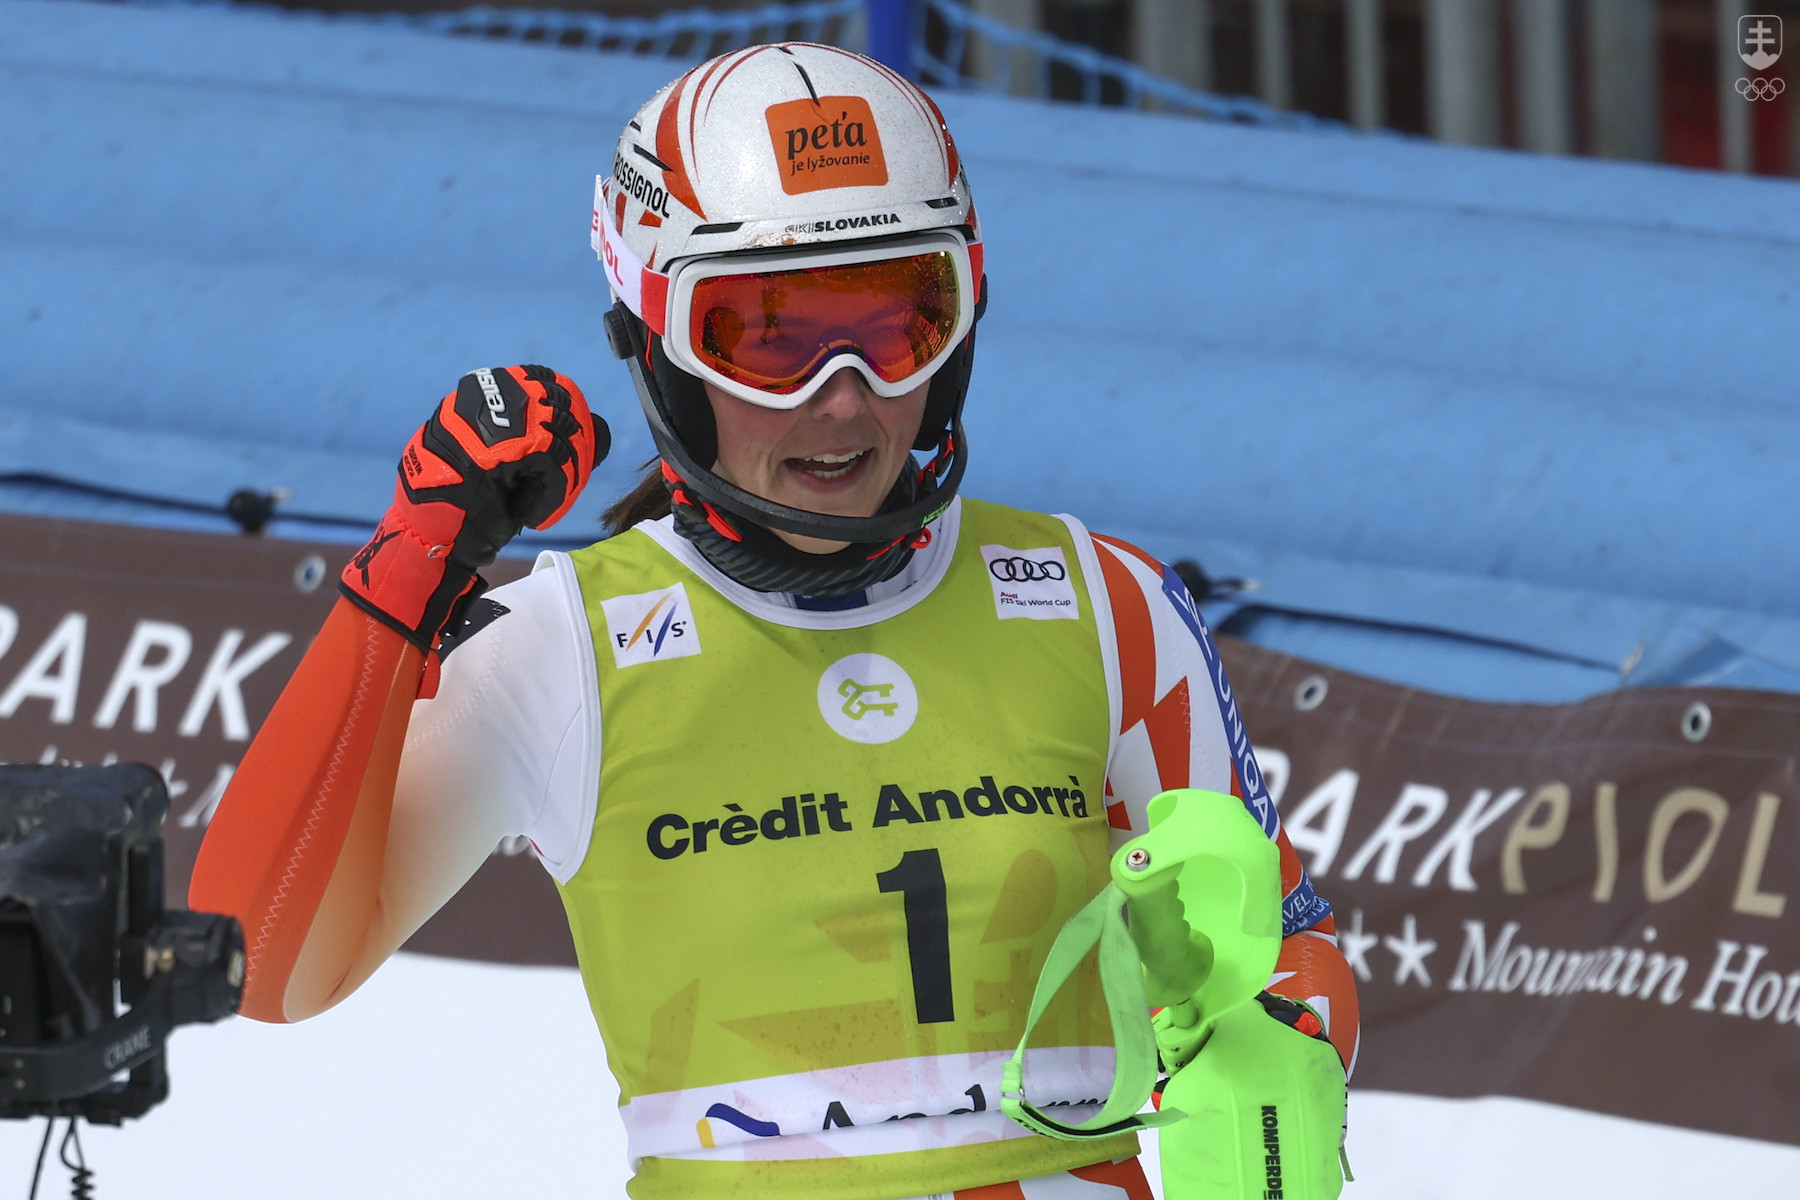 Petra Vlhová sa raduje z triumfu vo finálovom slalome SP 2022/23 v zjazdovom lyžovaní v andorrskom Soldeu. 